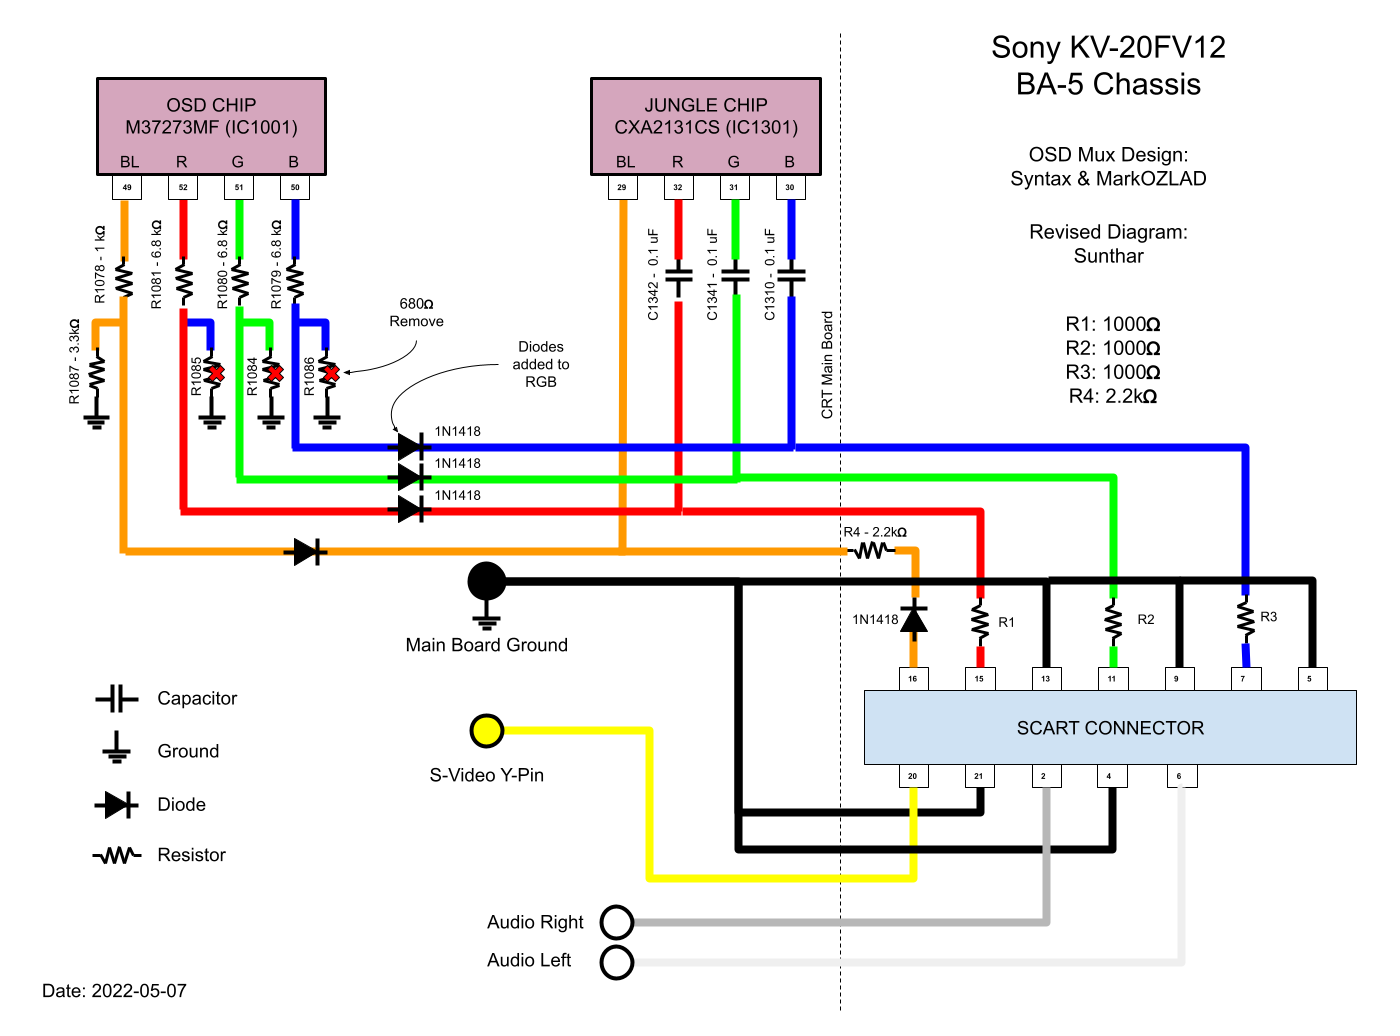 Sony BA-5 chassis RGB mod mux diagram